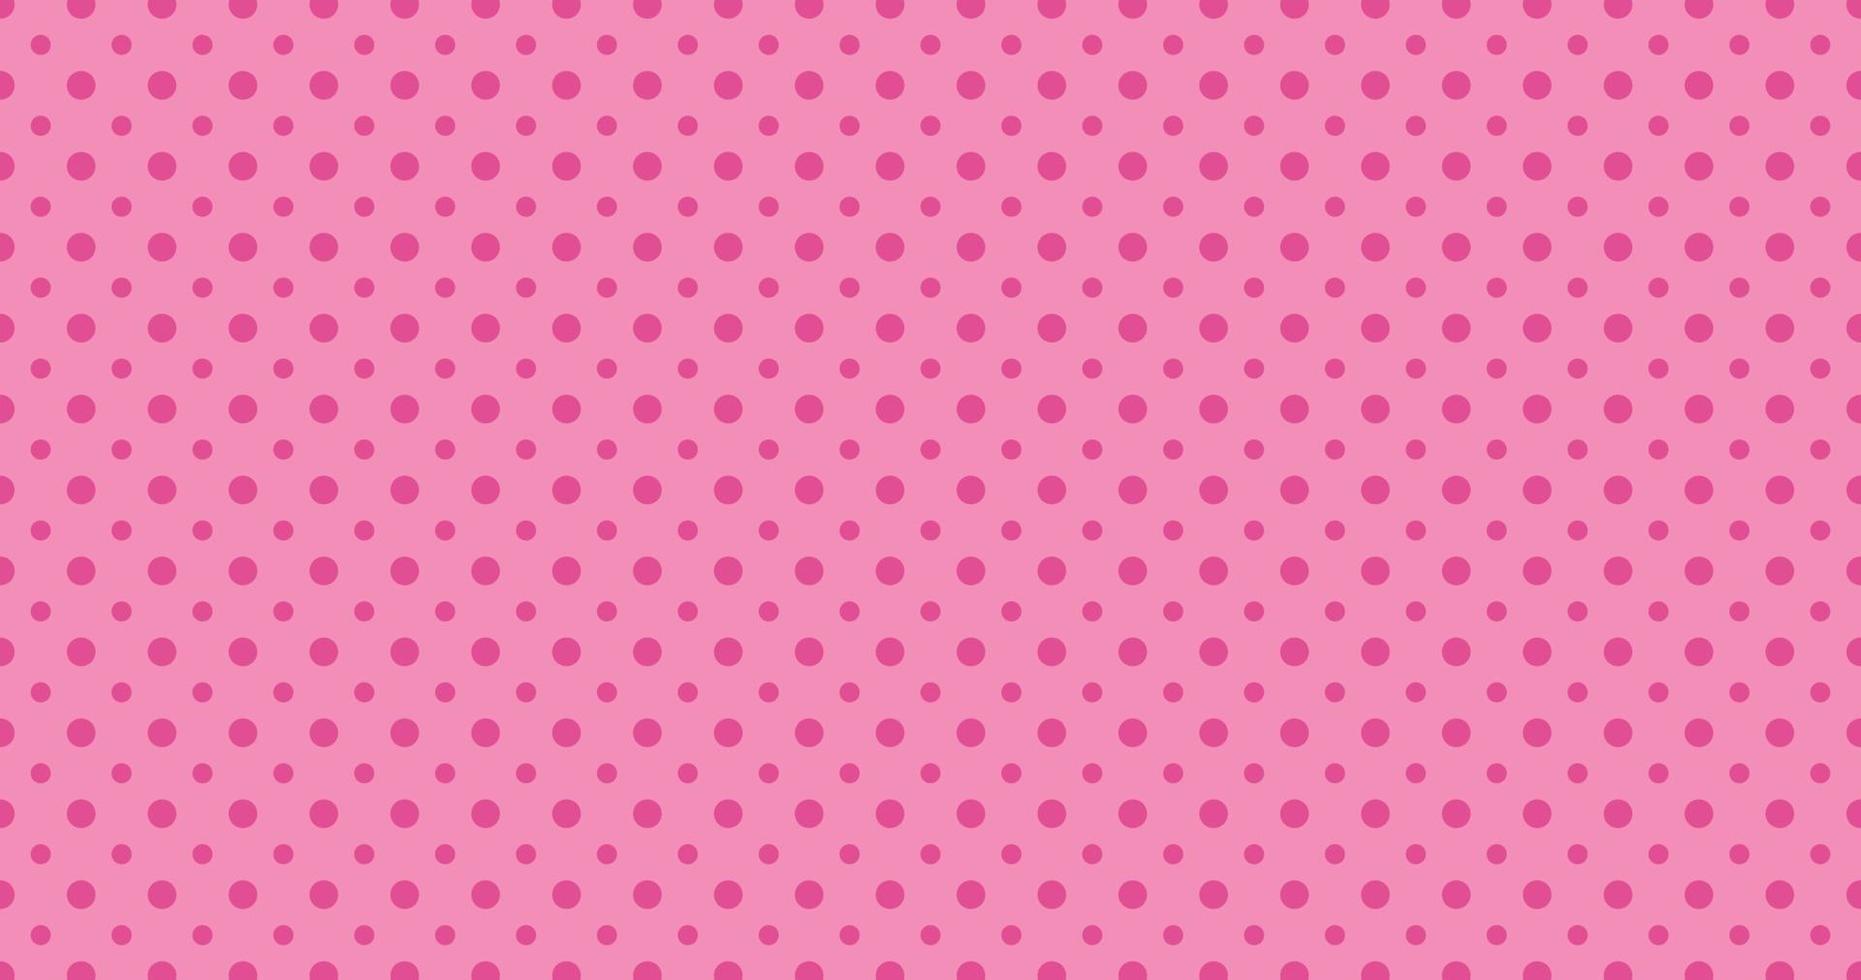 muito fofos doces bolinhas padrão sem emenda retro elegante vintage feminino rosa amplo conceito de fundo para impressão de moda vetor